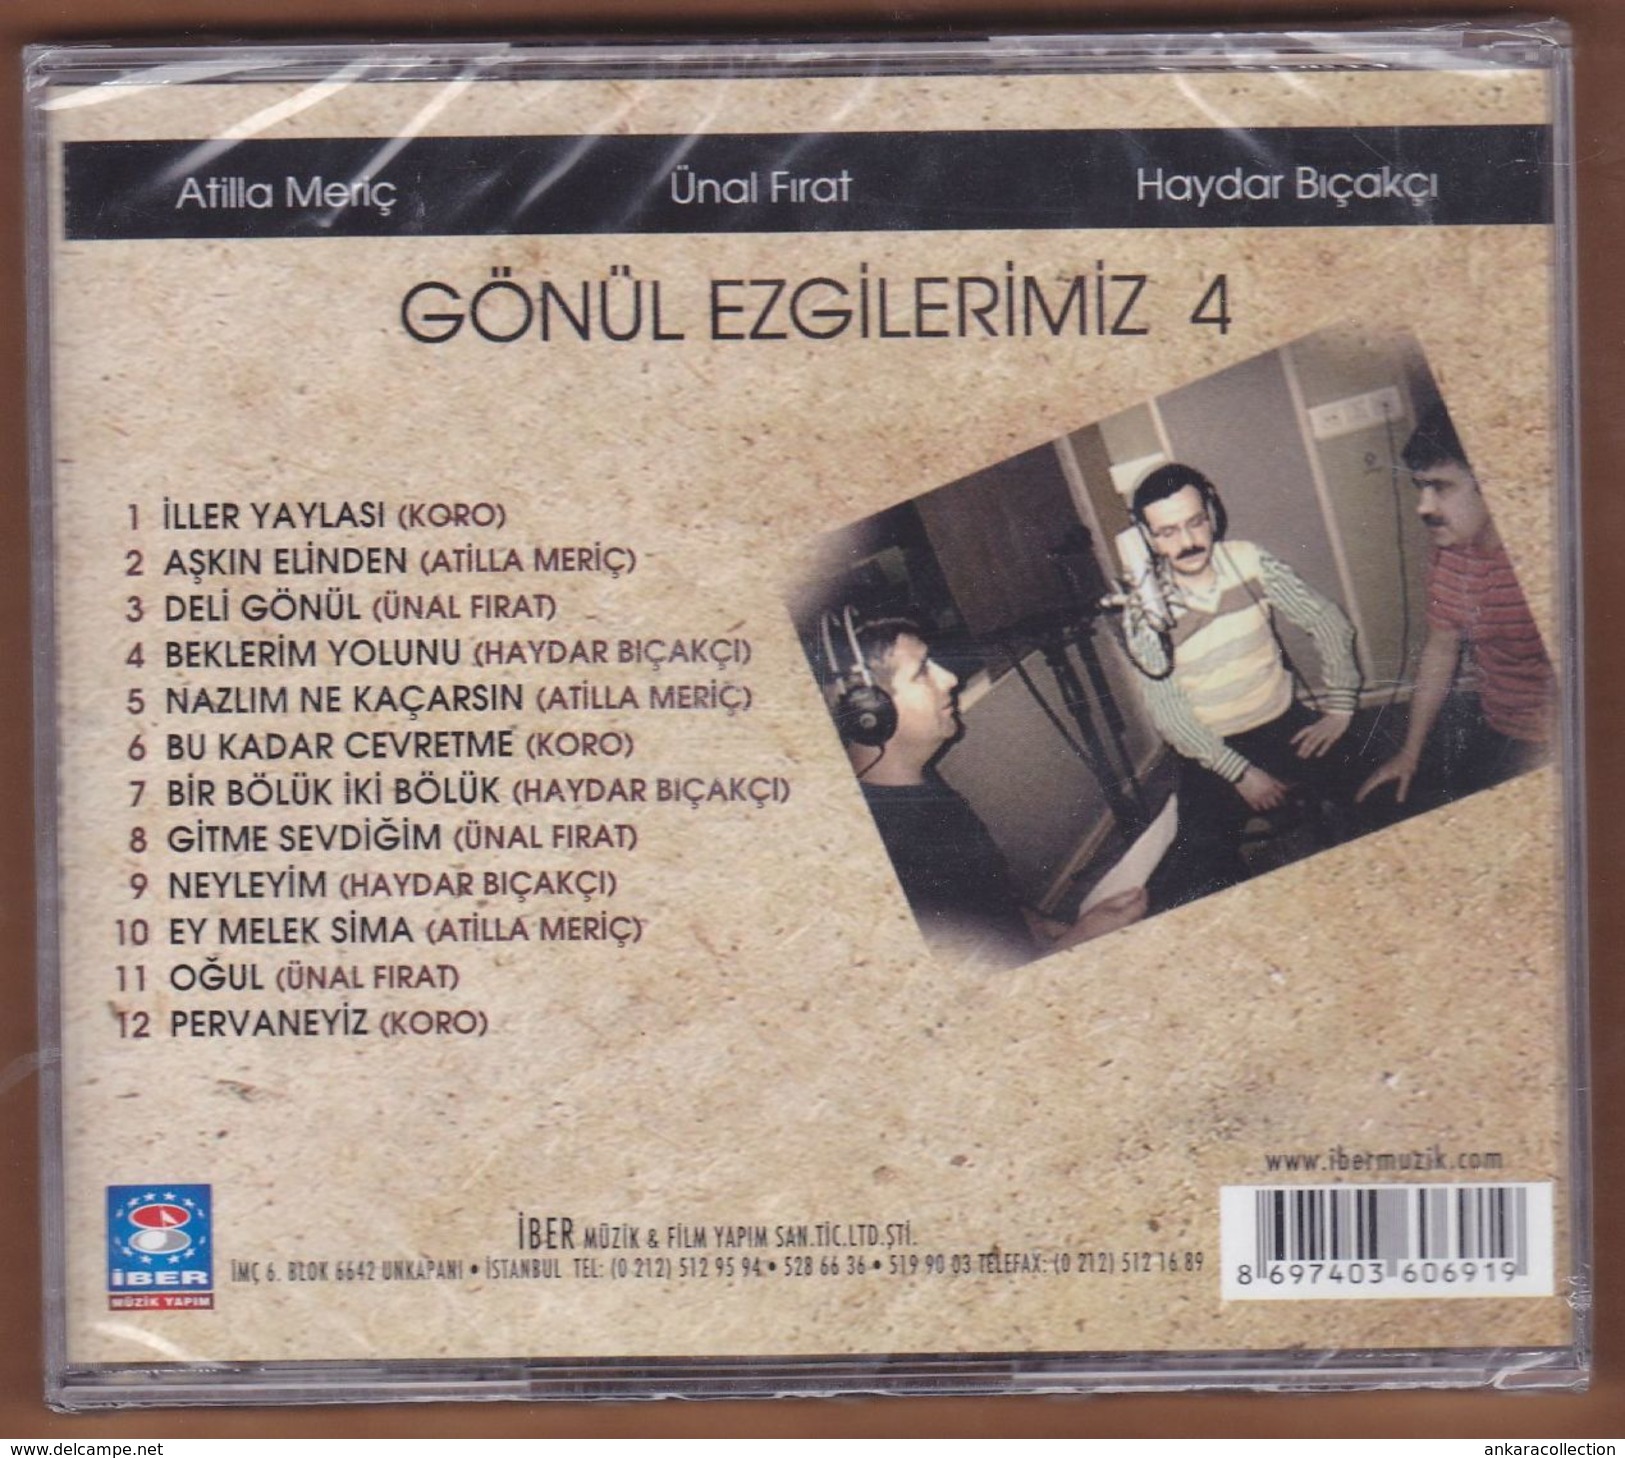 AC -  Atilla Meriç ünal Fırat Haydar Bıçakçı Gönül Ezgilerimiz 4 BRAND NEW TURKISH MUSIC CD - World Music